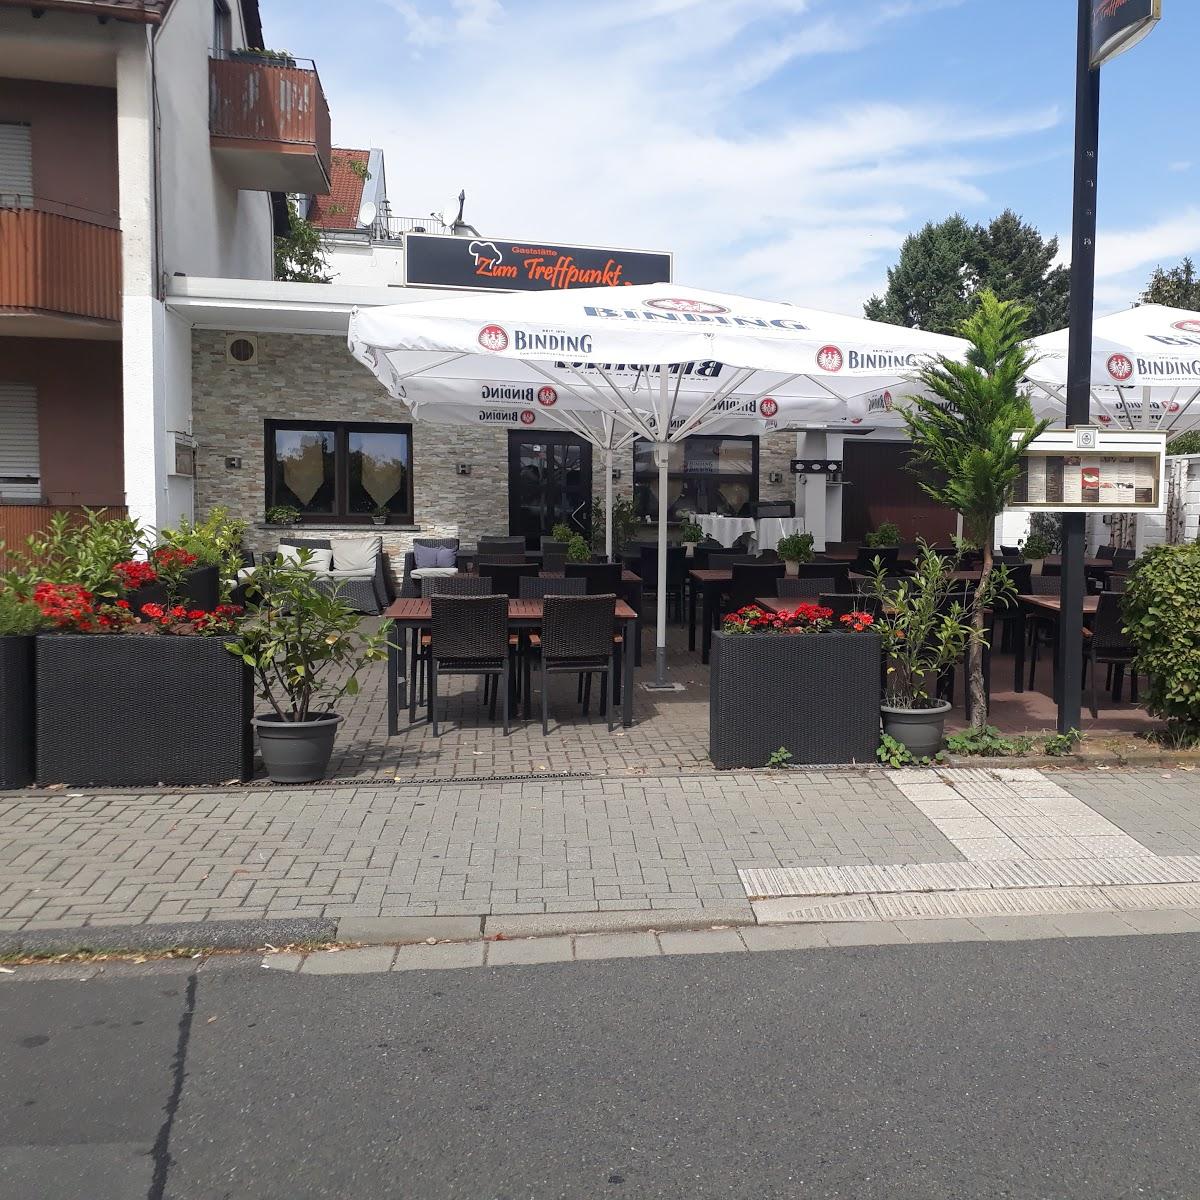 Restaurant "Zum Treffpunkt" in  Kelsterbach